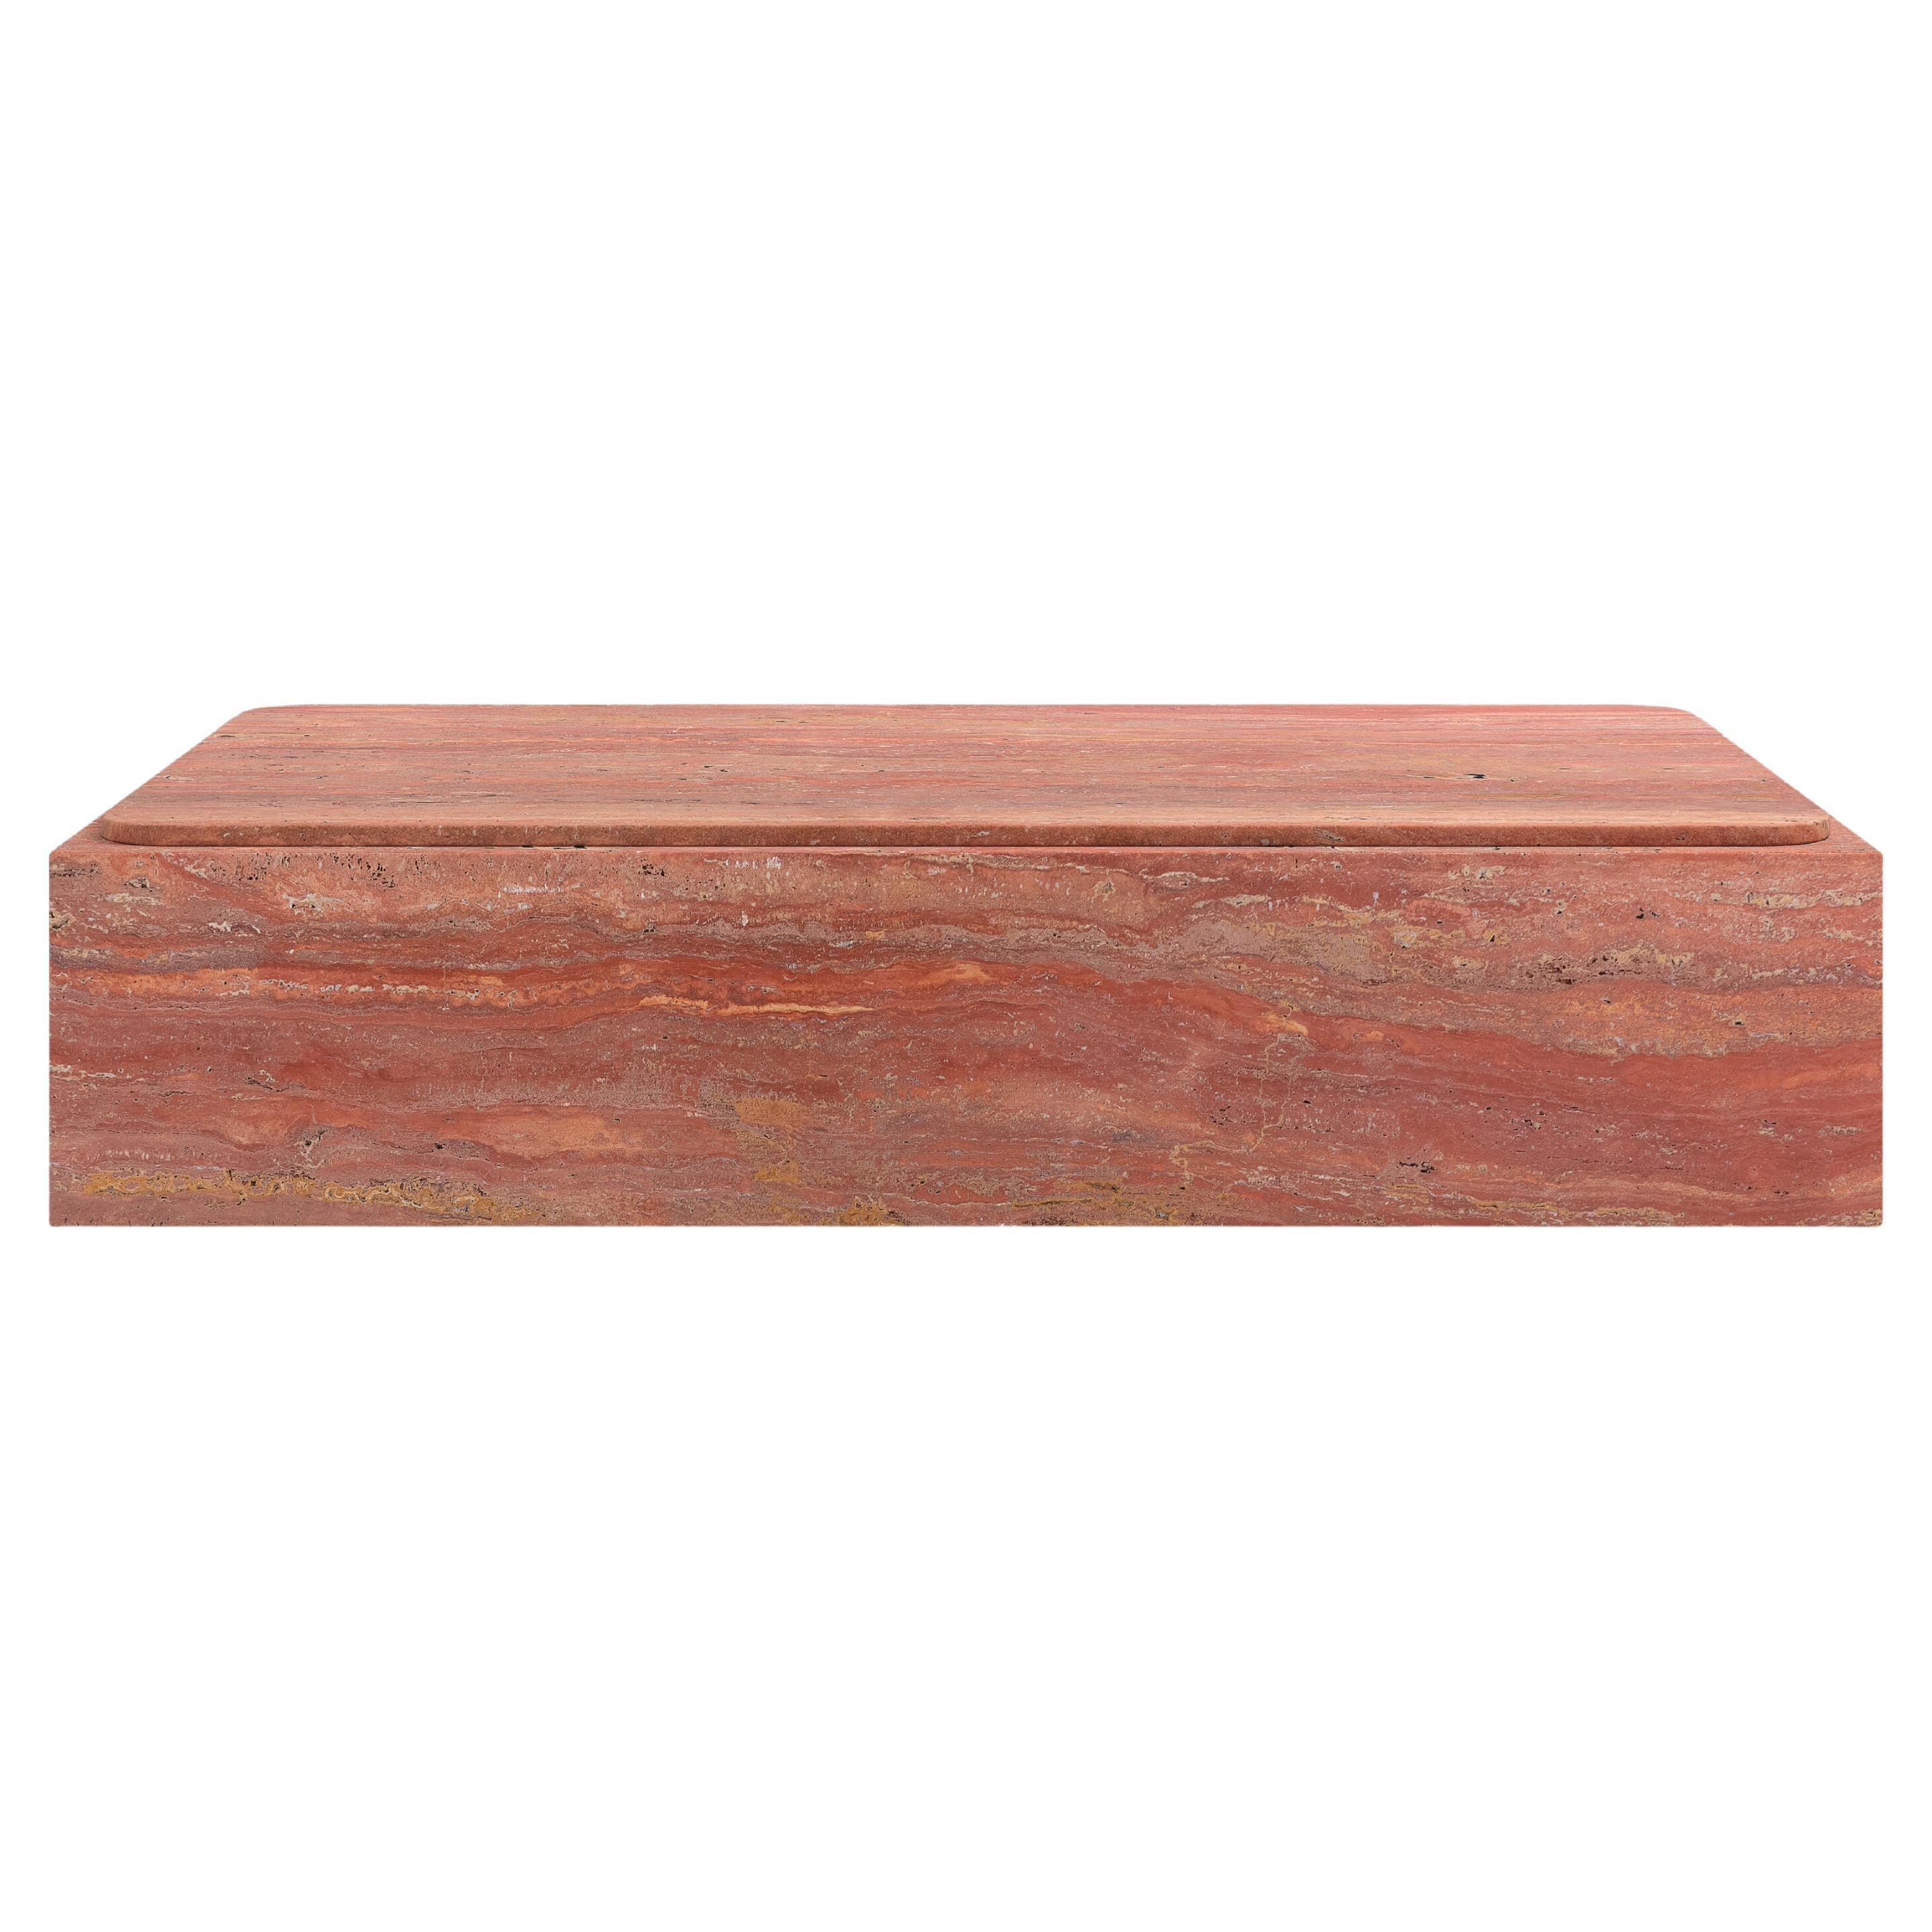 FORM(LA) Cubo Rectangle Plinth Coffee Table 72”L x 42”W x 13”H Travertino Rosso